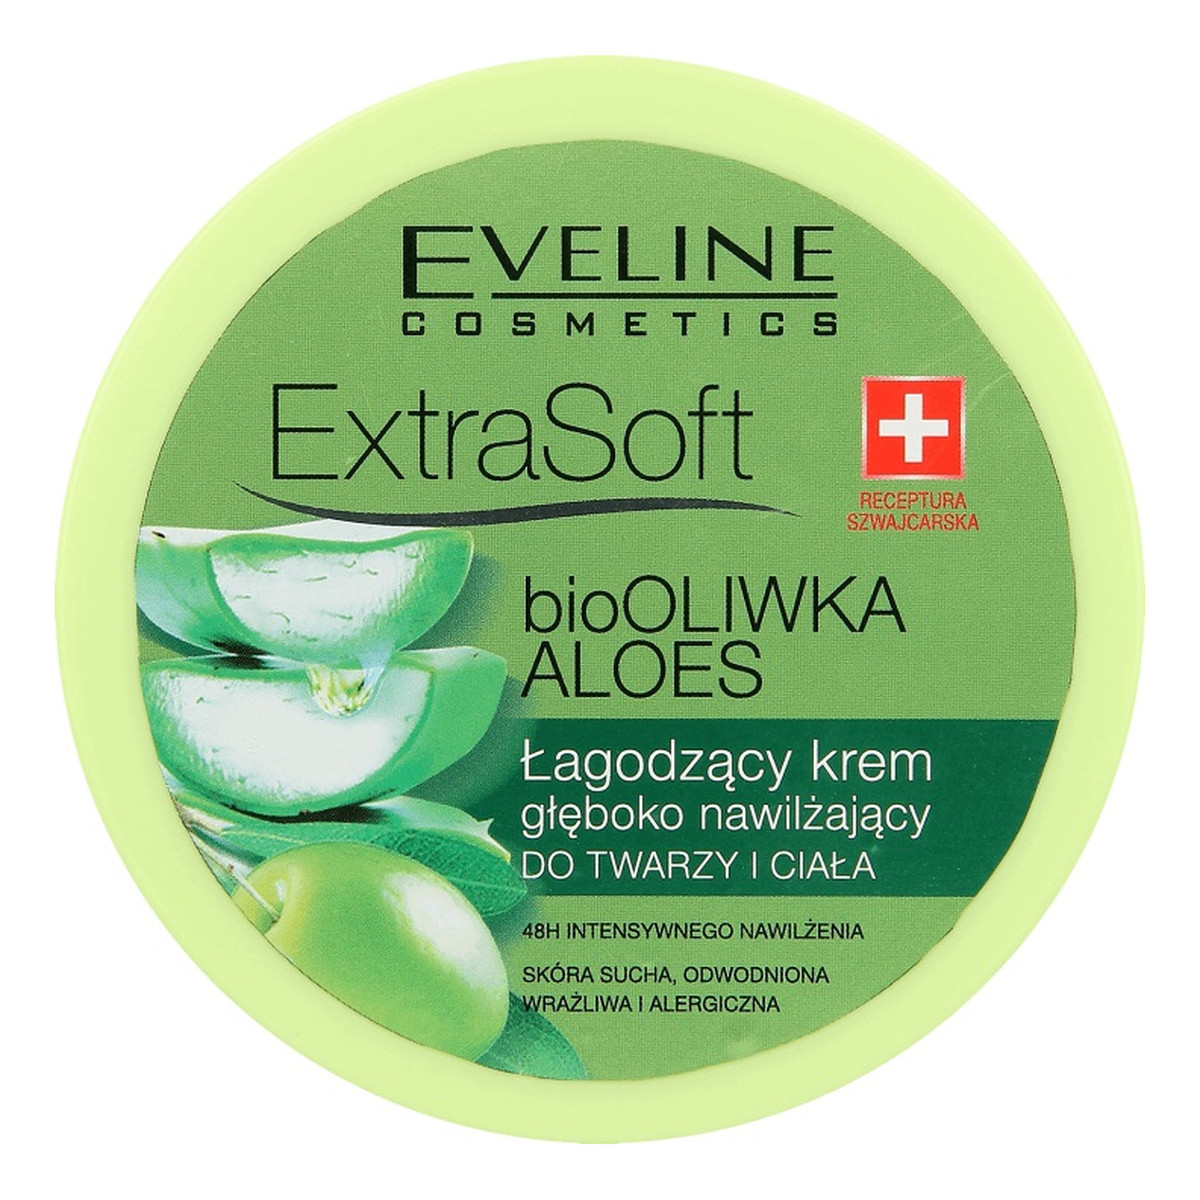 Eveline Extra Soft Łagodzący krem głęboko nawilżający do twarzy i ciała bio Oliwka i Aloes 175ml